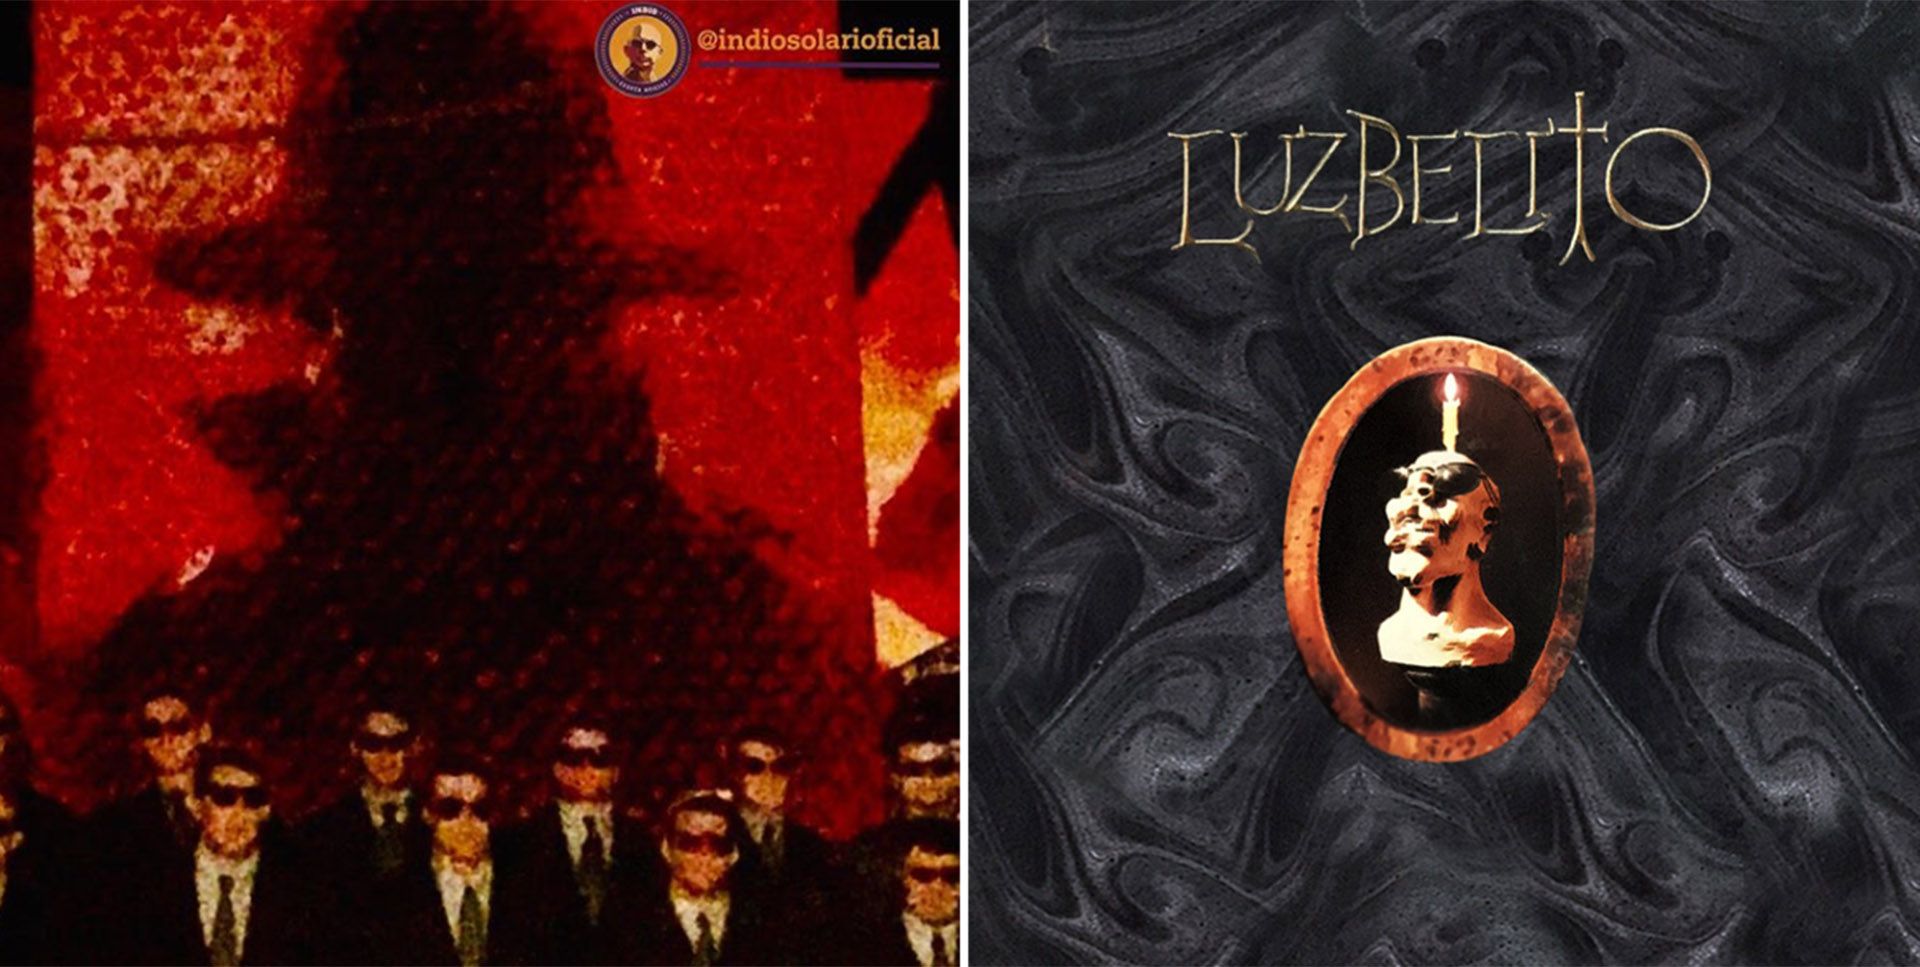 A la izquierda, la propuesta del Indio para el disco "Luzbelito"; a la derecha, la portada original del disco, por Rocambole